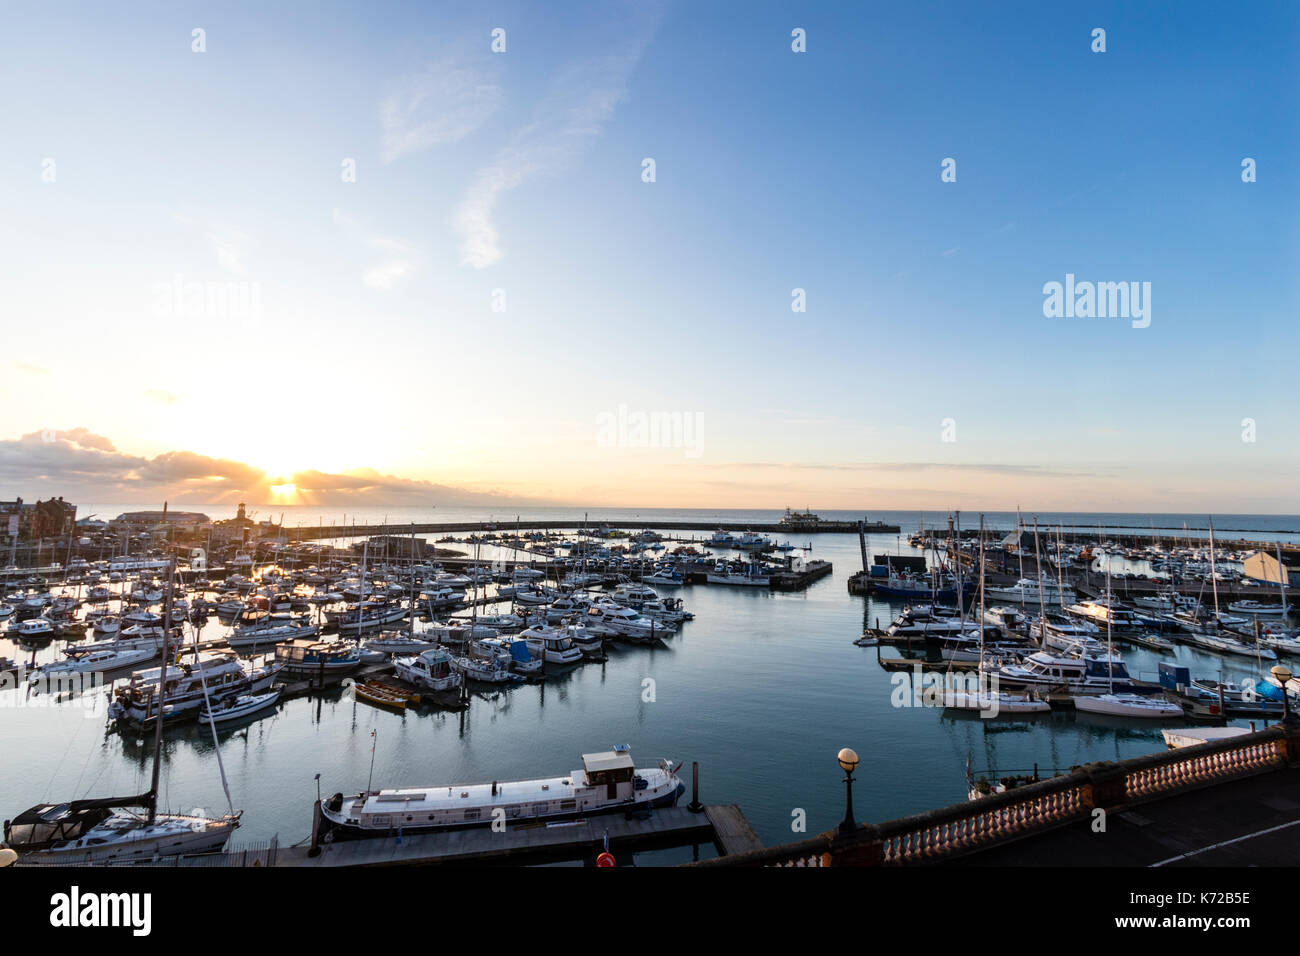 Inghilterra, Ramsgate. Alba sul Canale Inglese e Ramsgate Royal Harbour. Il marina Yachting in primo piano. Abbastanza chiaro cielo blu. Foto Stock